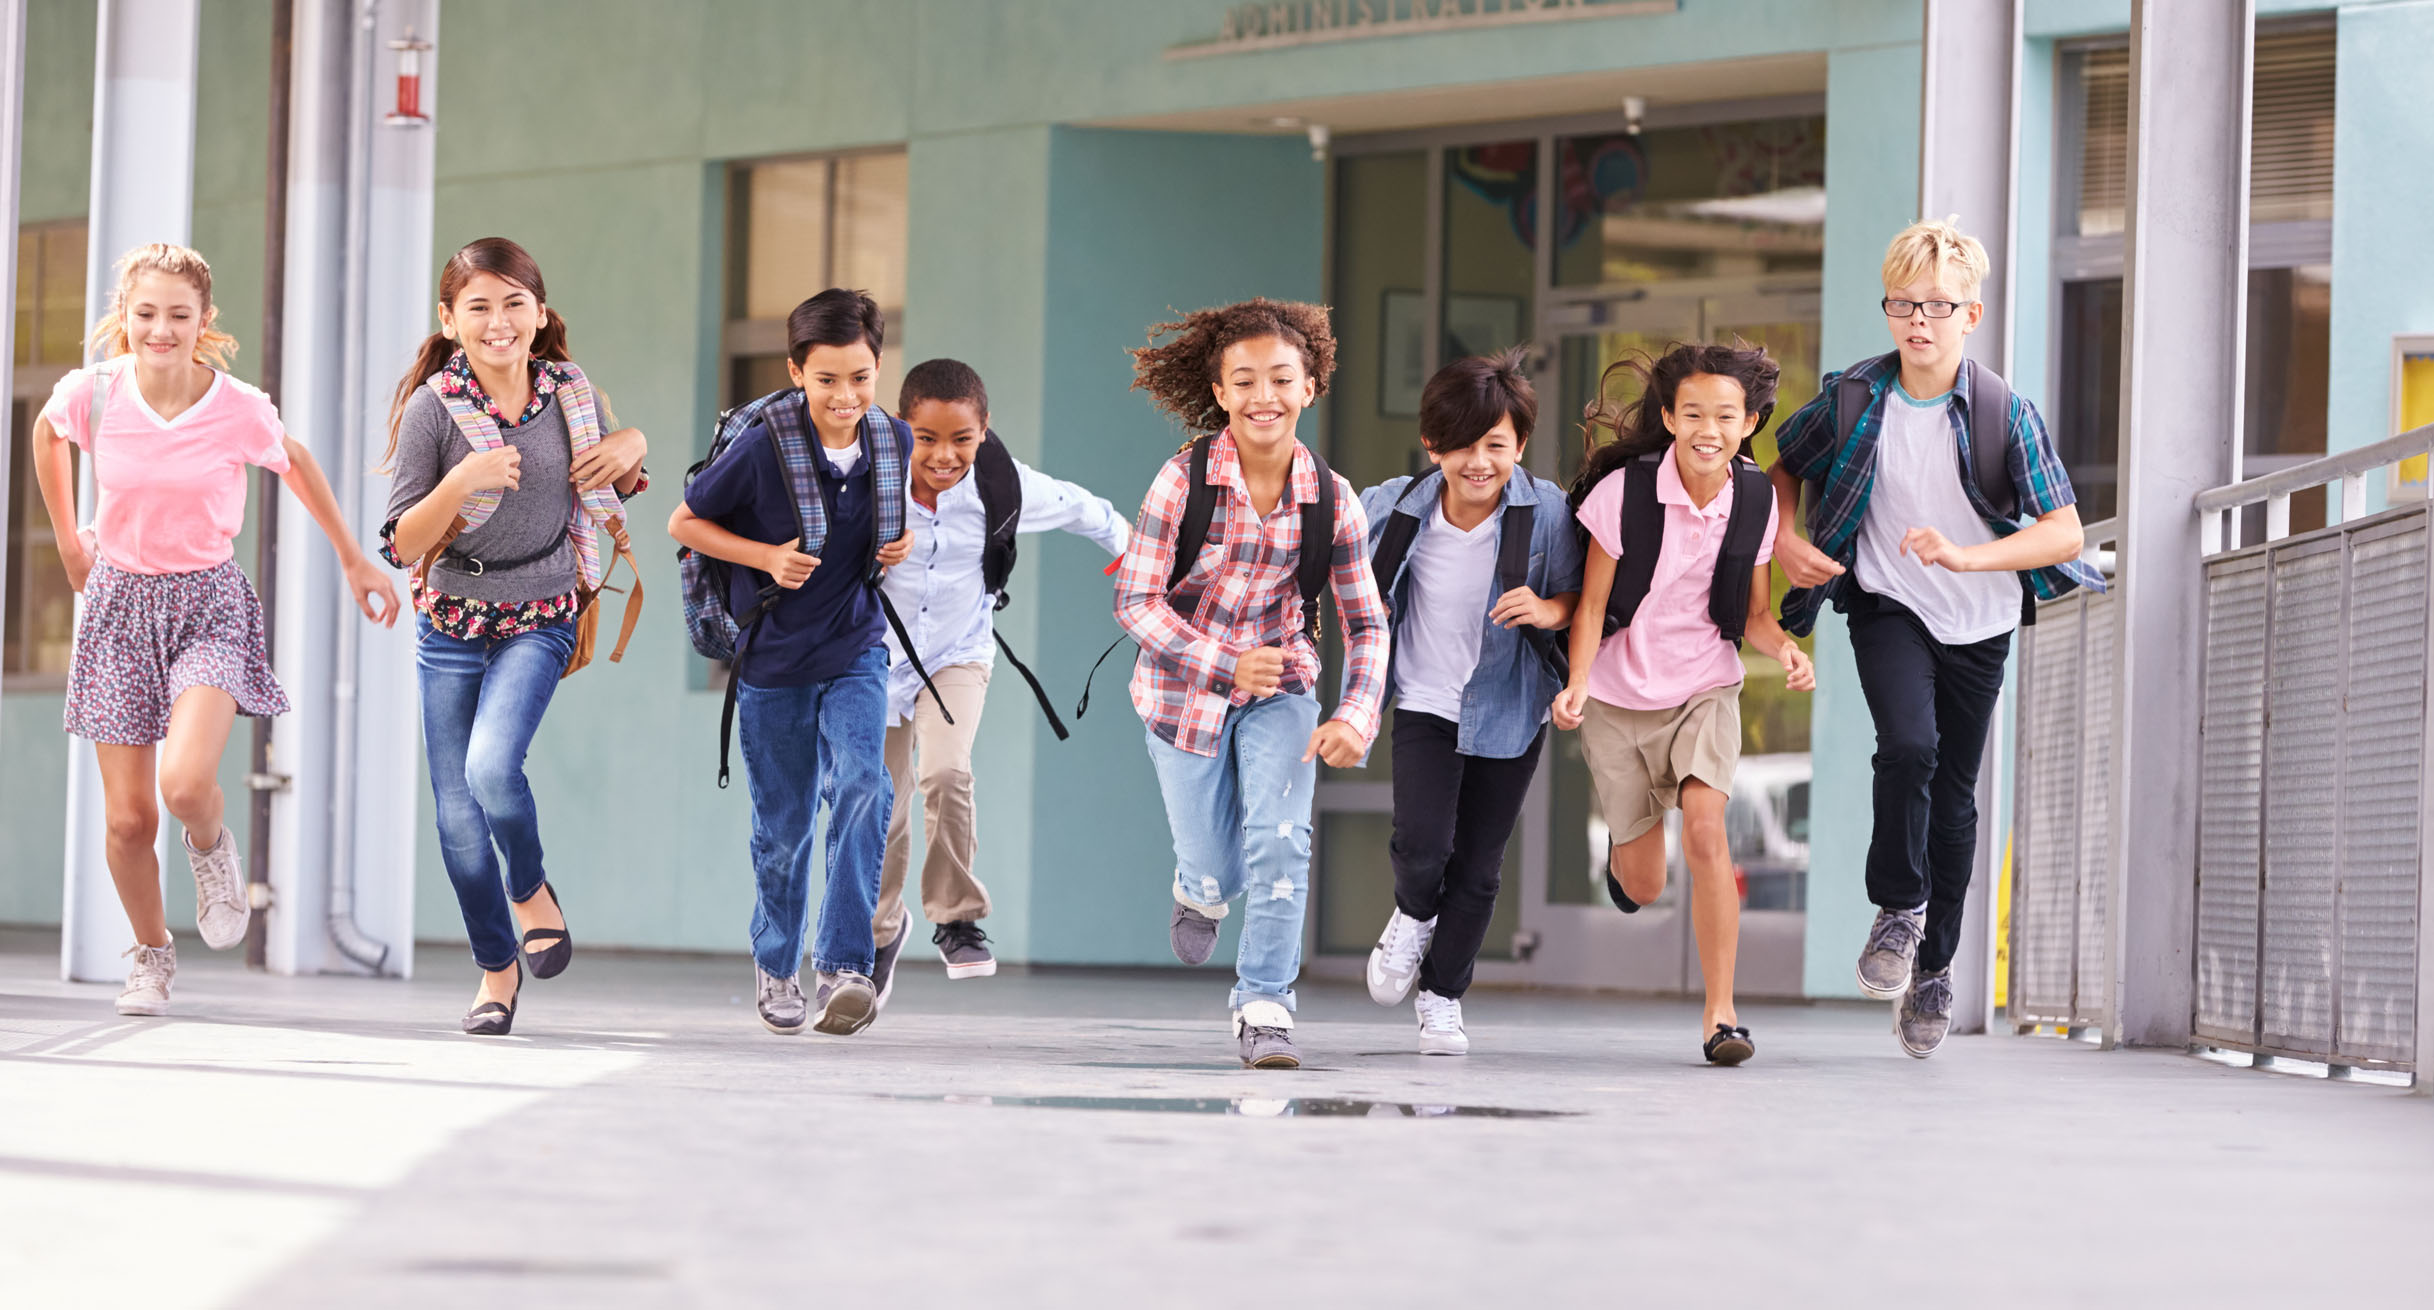 Kinder rennen durch den Flur einer Schule